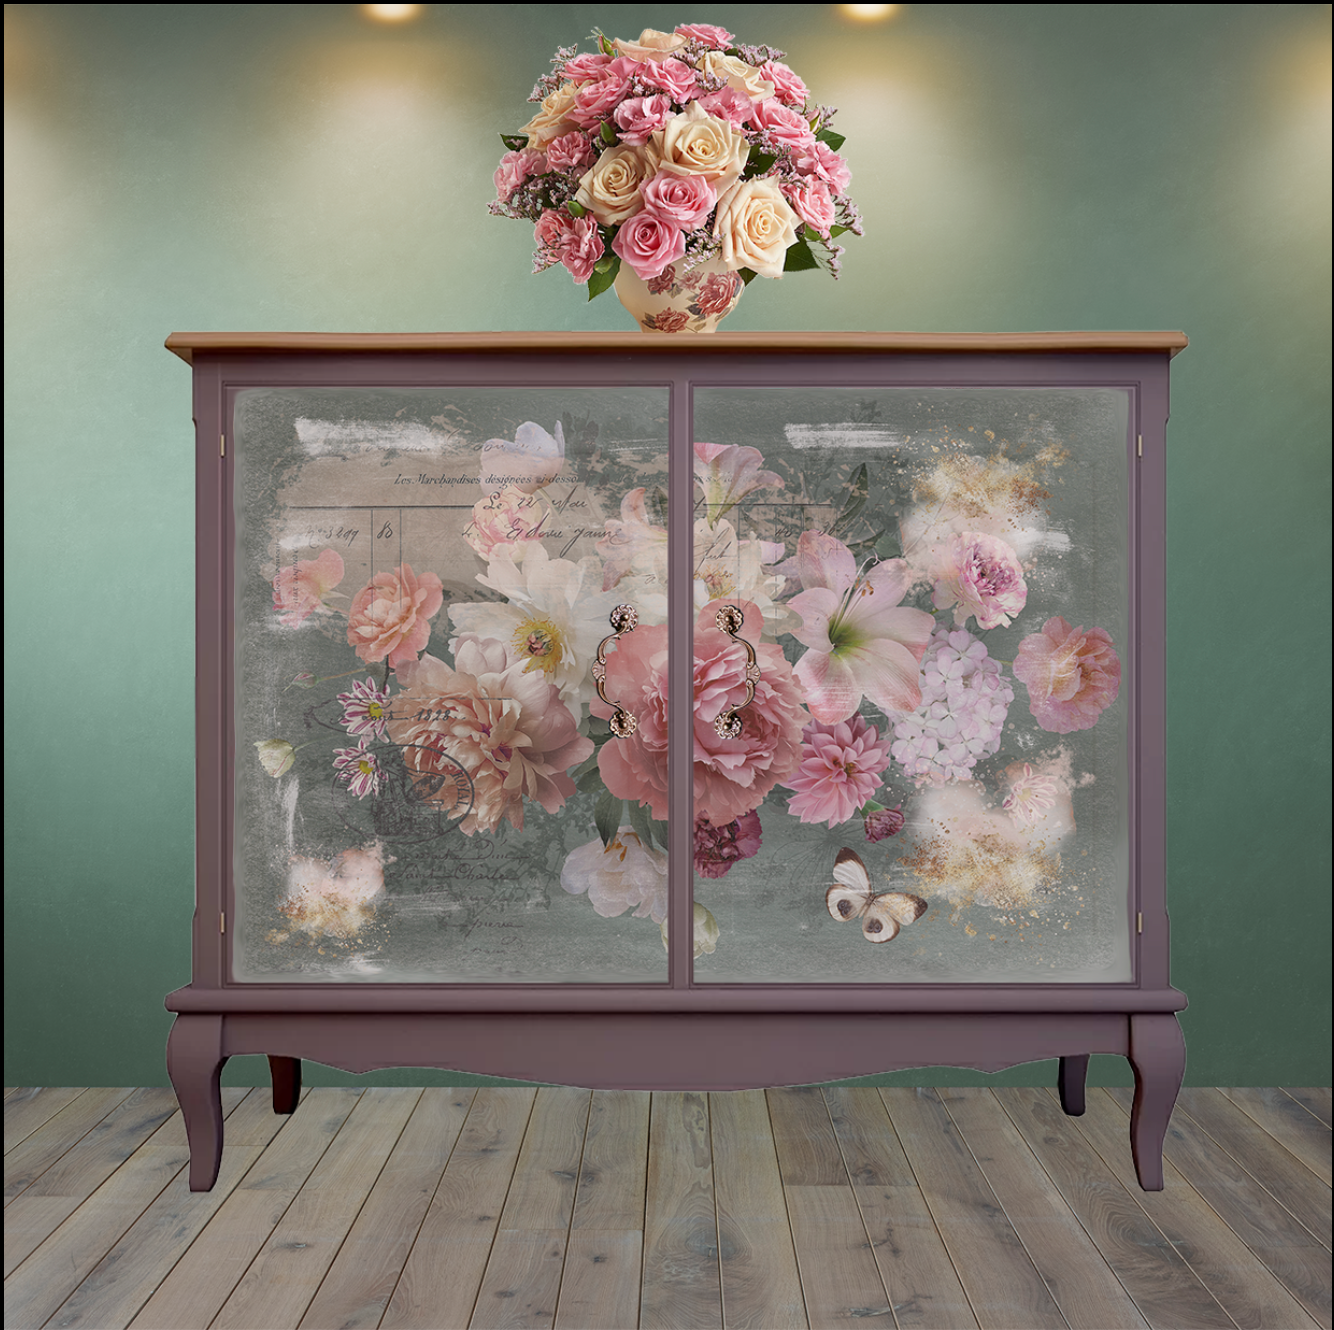 Hokus Pokus; Blush Decor - Weave Decoupage; floral decoupage, pinks, beige & off white floral composition.